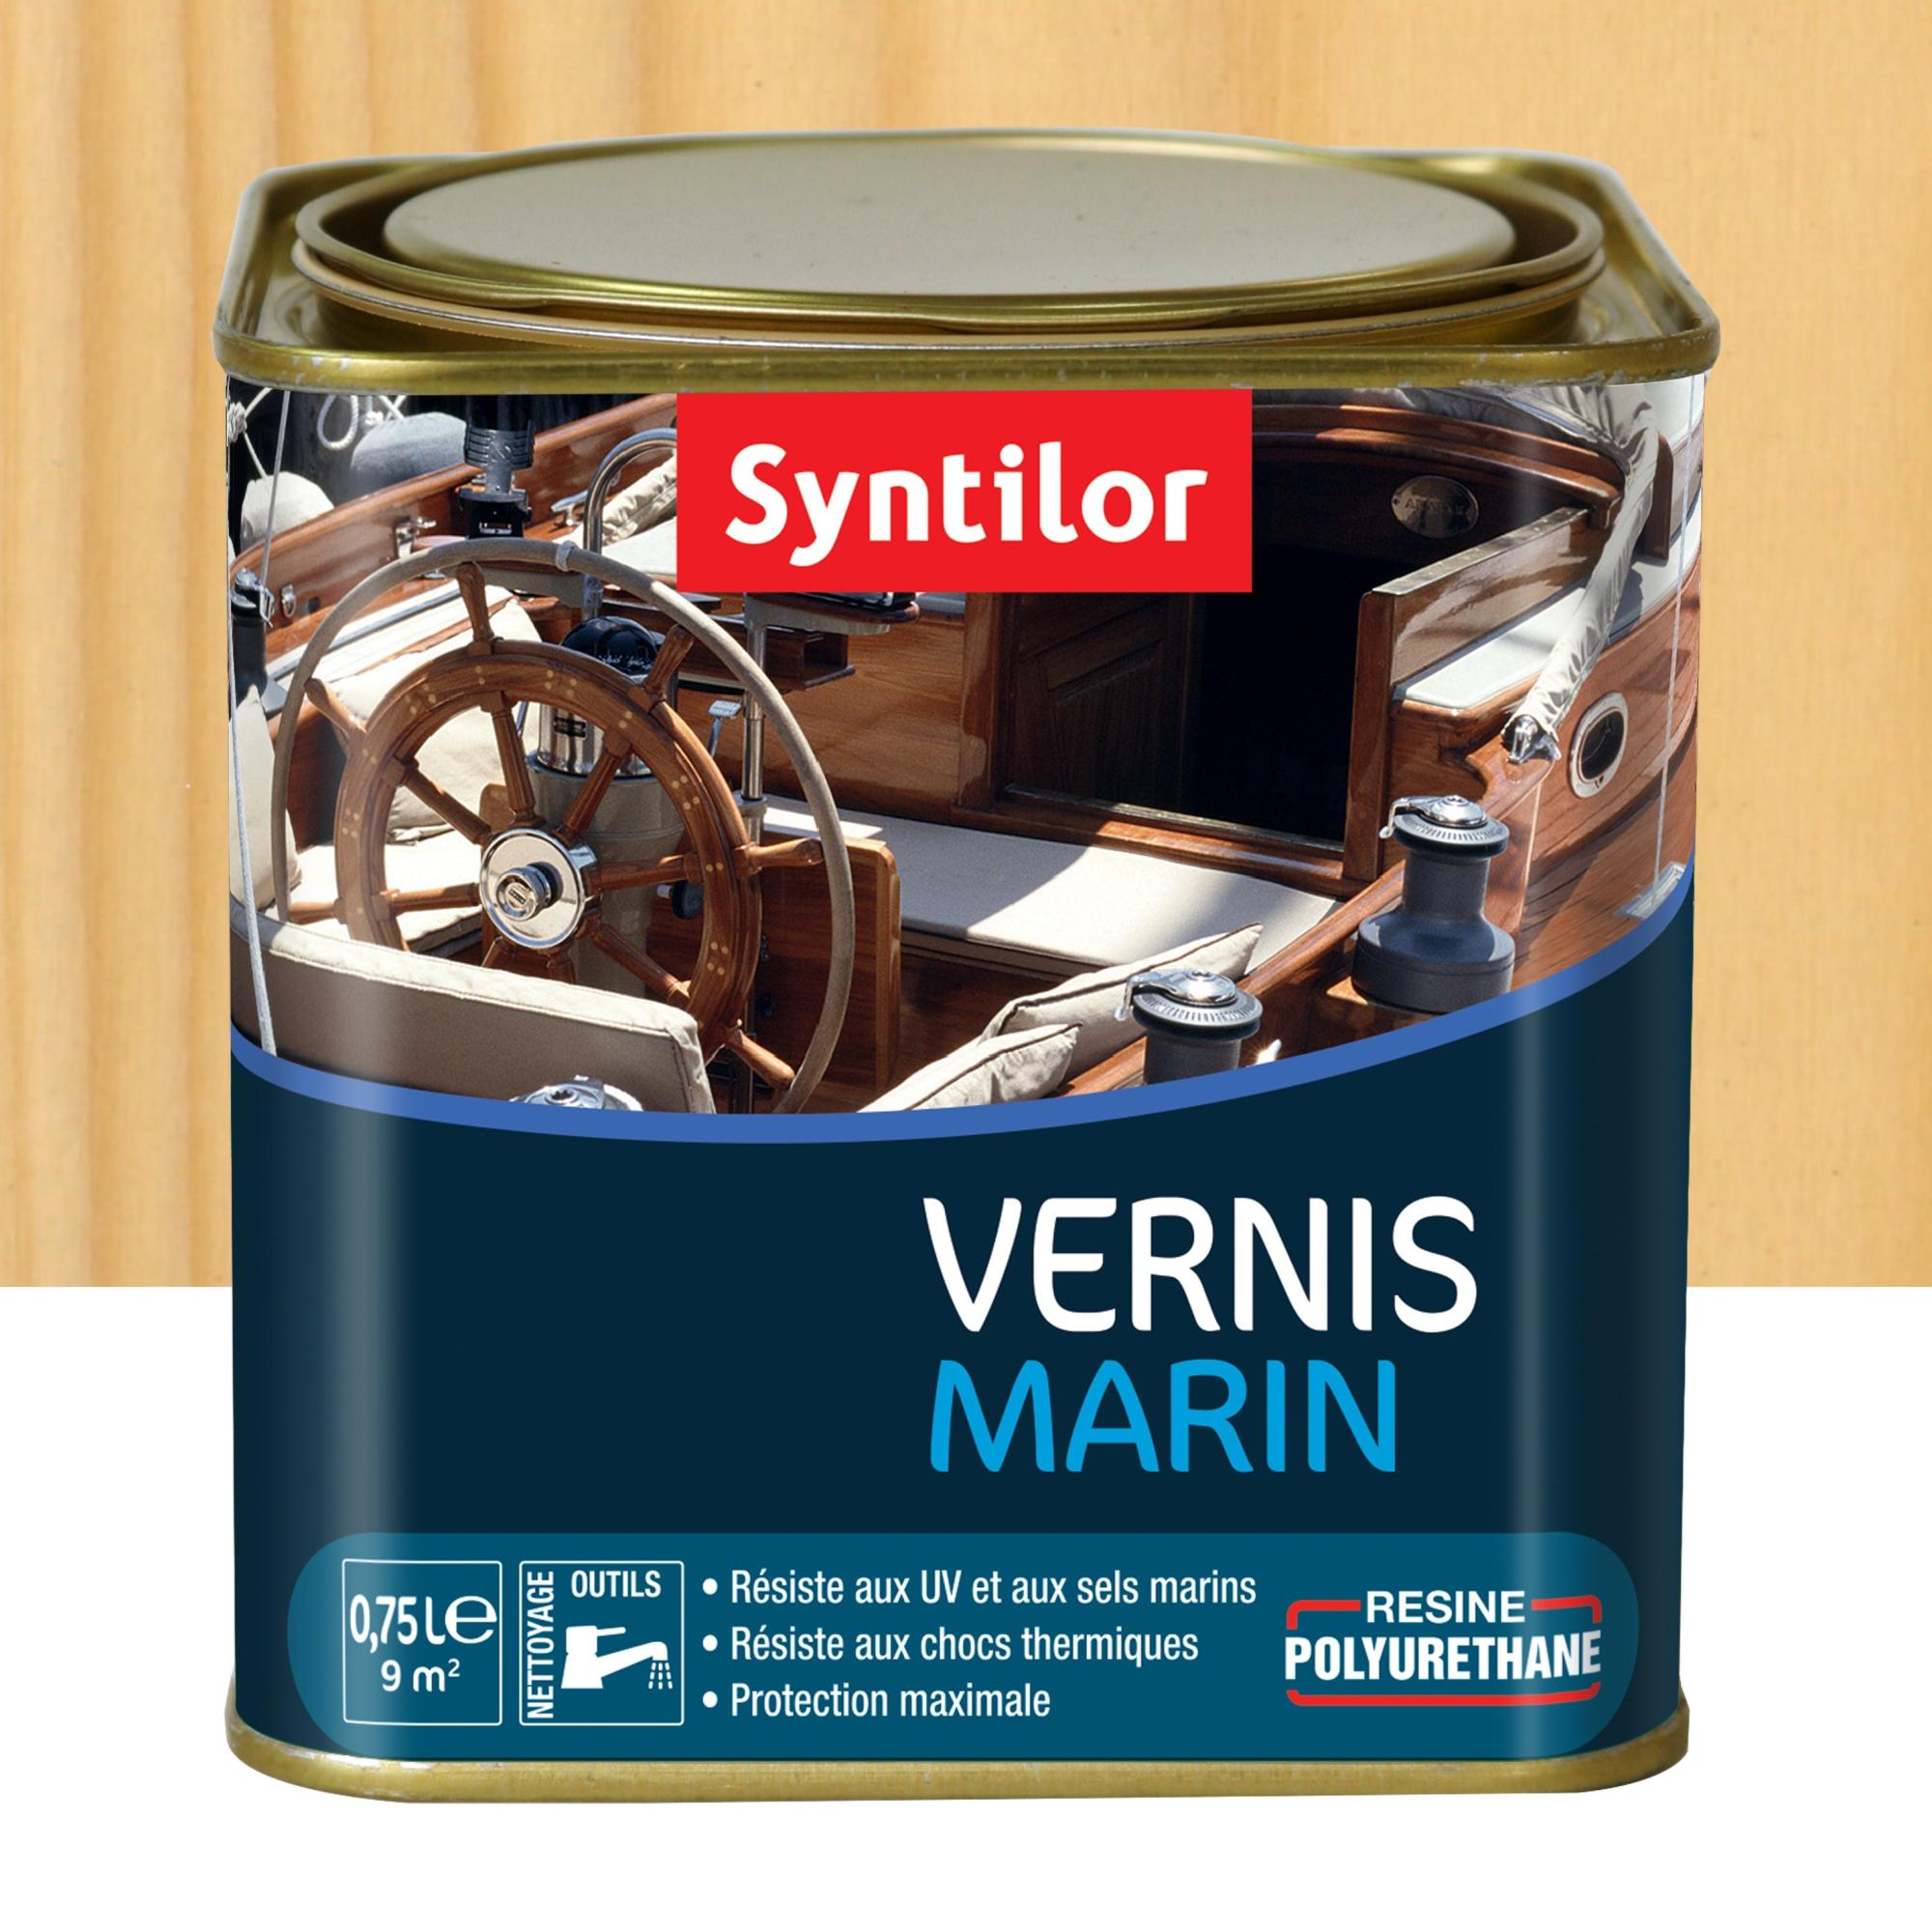 Vernis mat / Vernis brillant / vernis satiné - qualité professionnelle -  Vernis 100 % acrylique pour une bonne protection